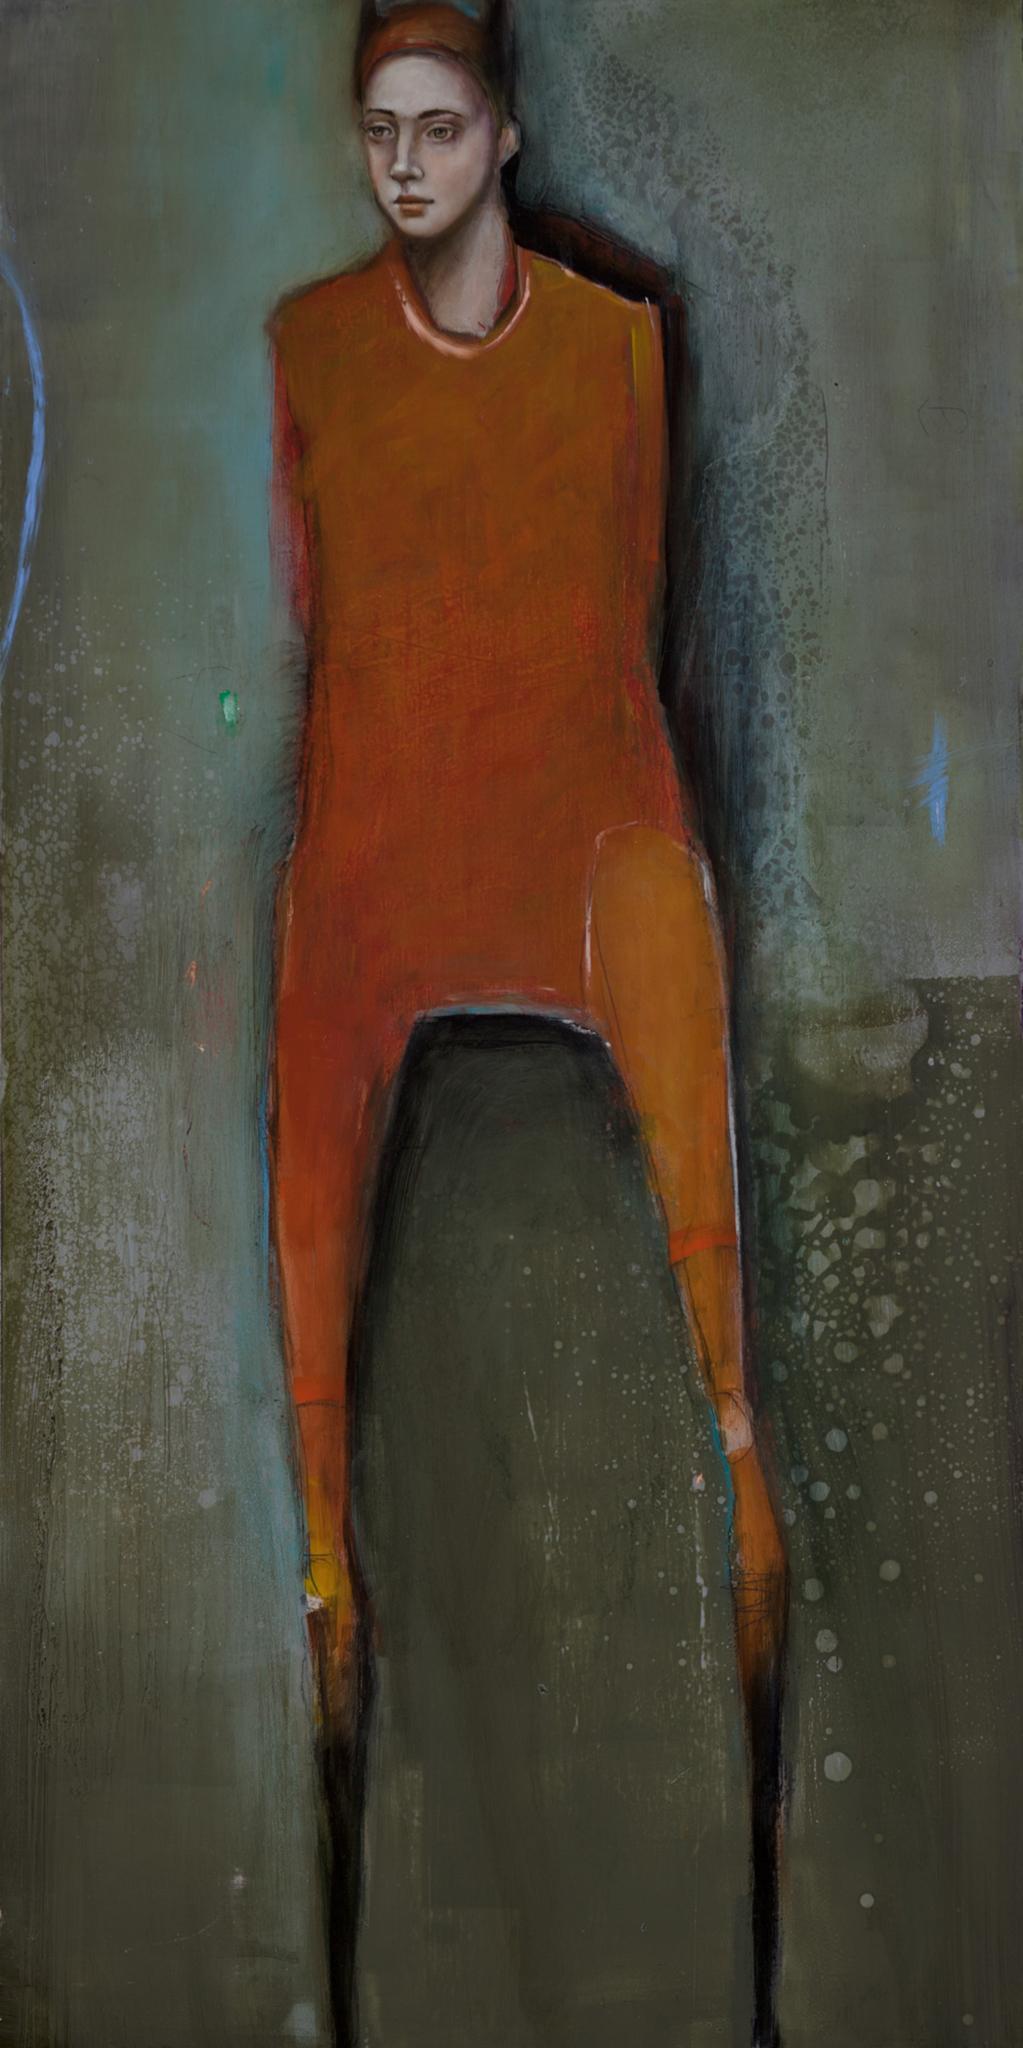 Portrait Painting Michele Mikesell - « Daughter of Ra » (Fille de Ra), huile sur toile, maître mystérieux et fantaisiste du portrait pop art